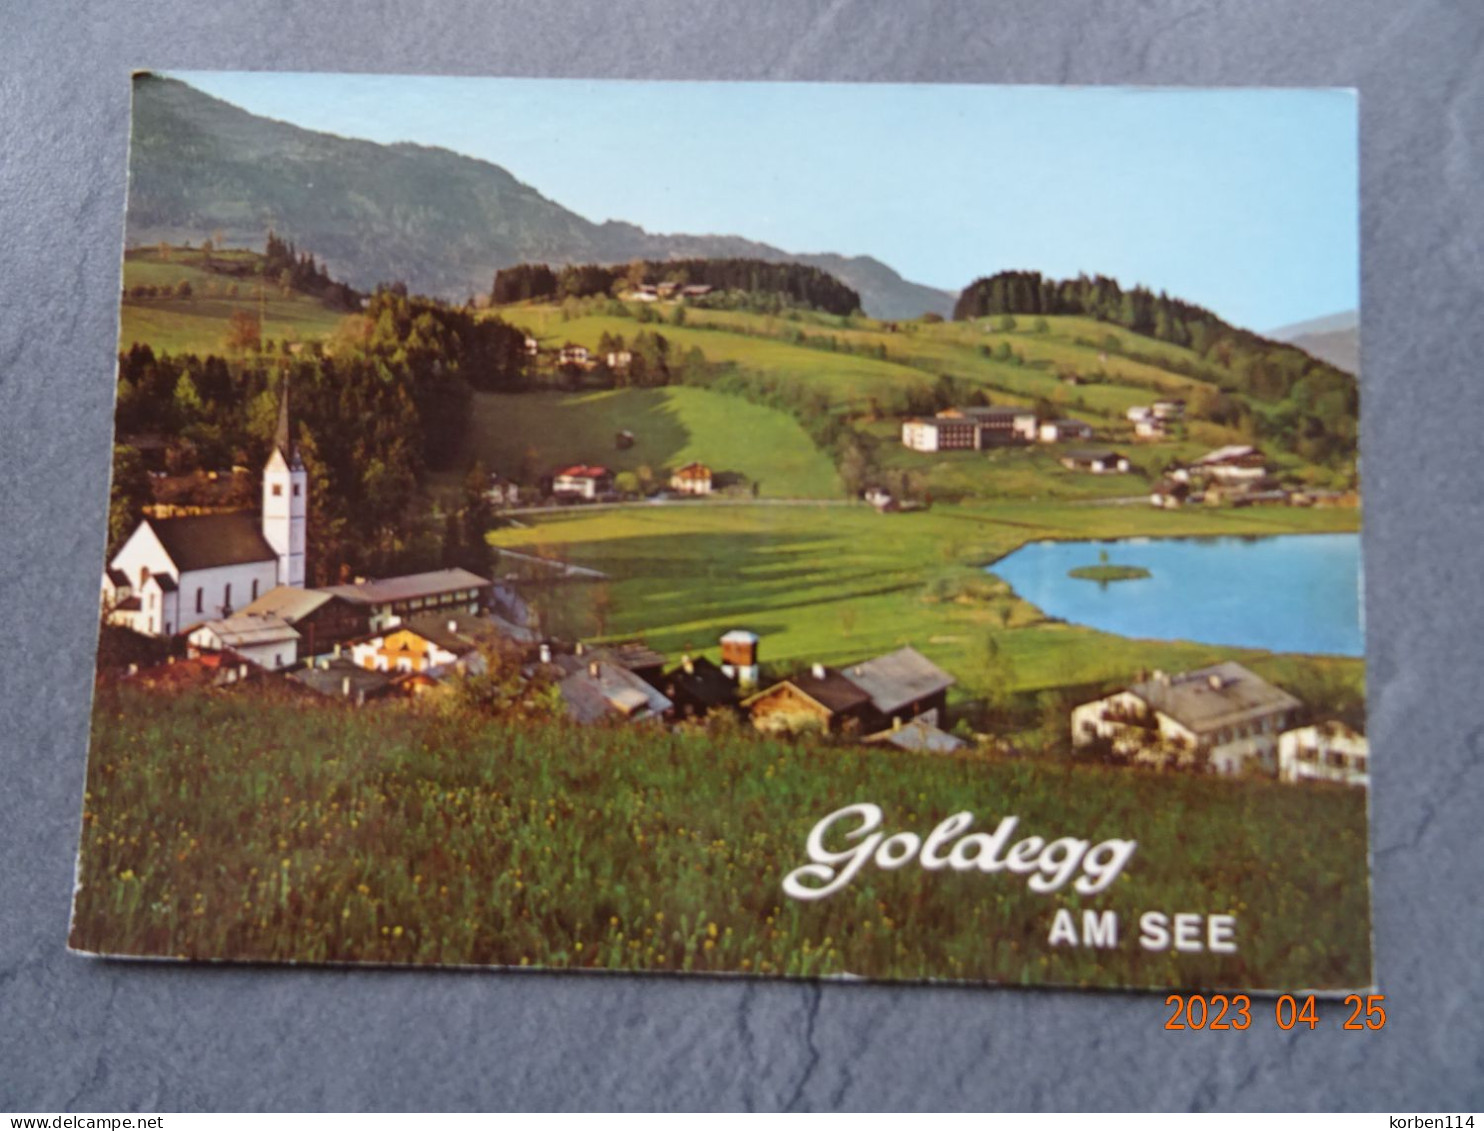 GOLDEGG AM SEE - Goldegg